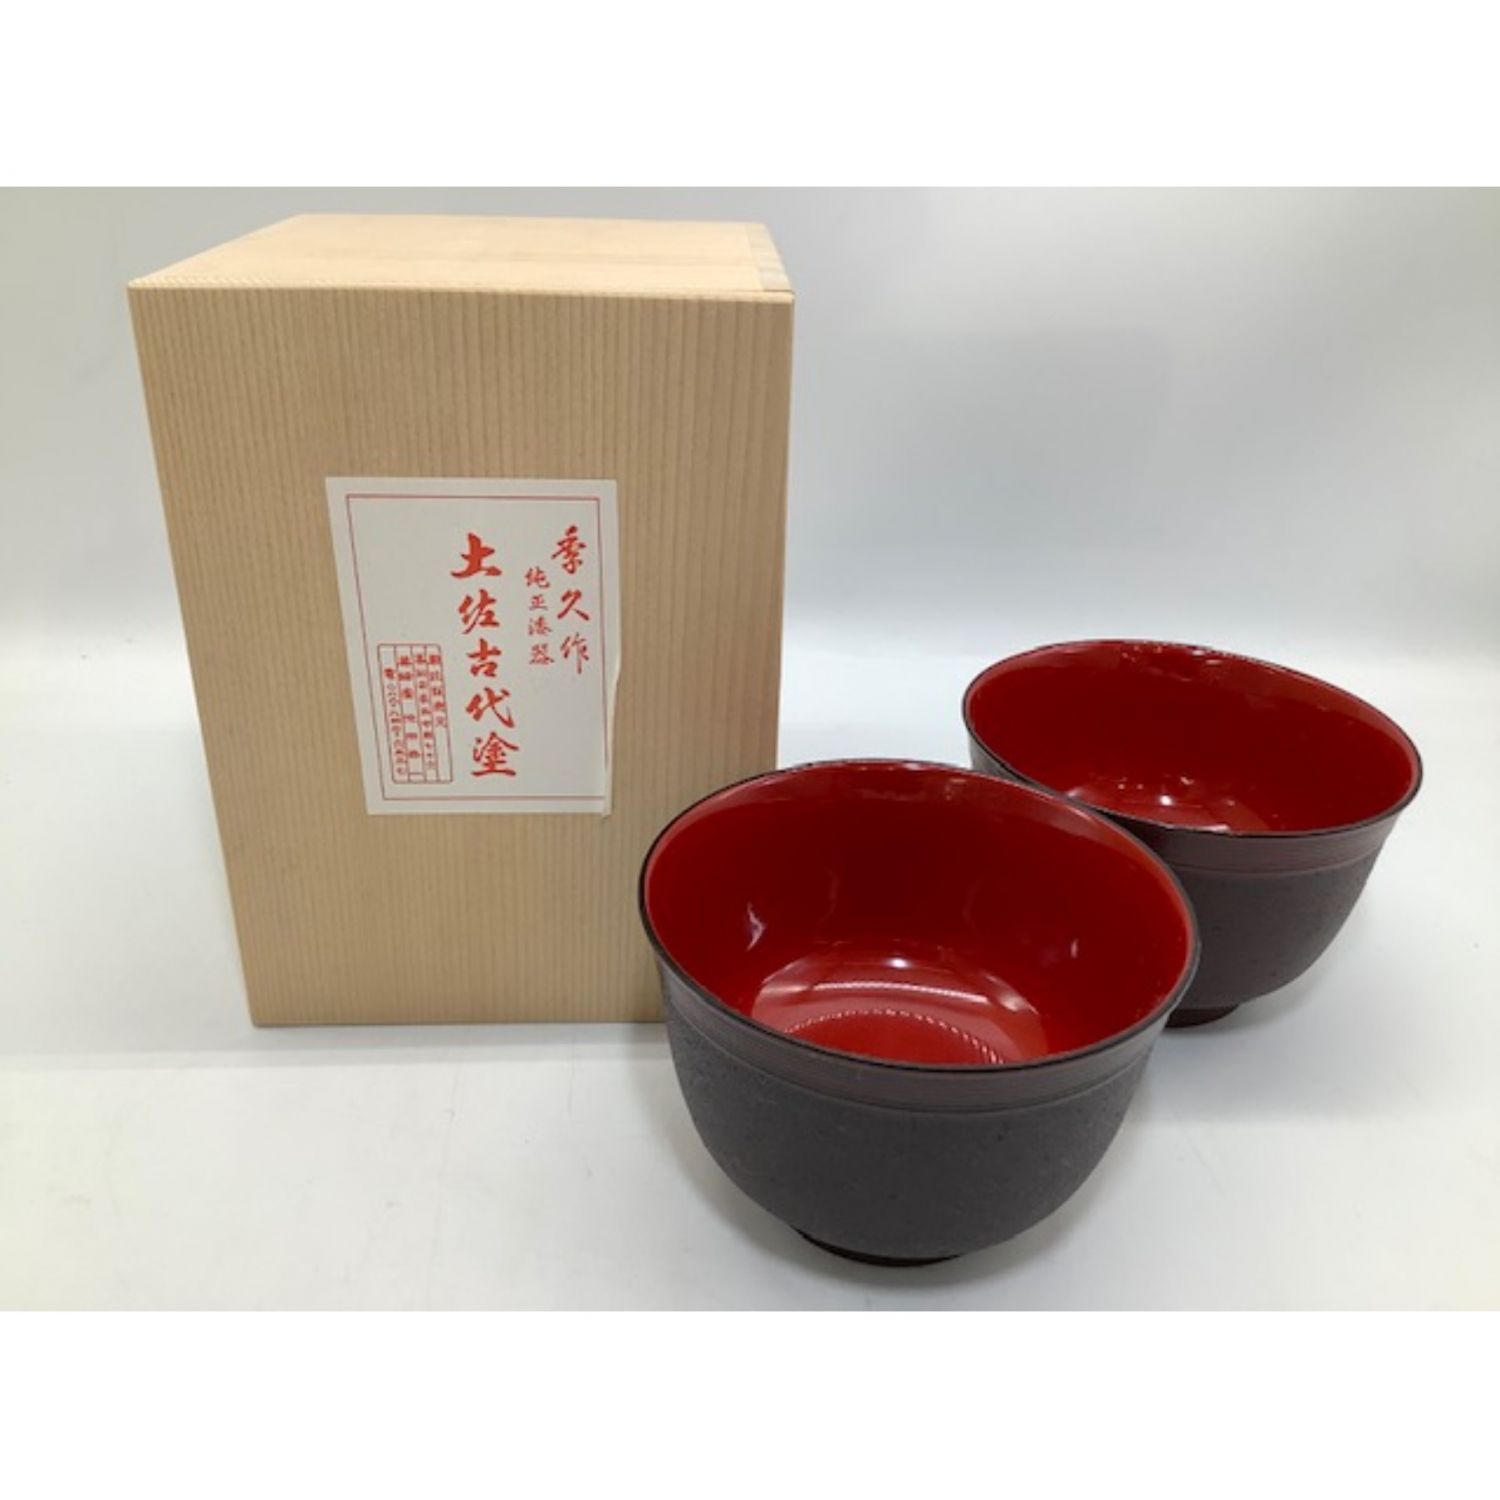 高知県伝統漆器「土佐古代塗」汁椀・箸セットプレミアム 通販